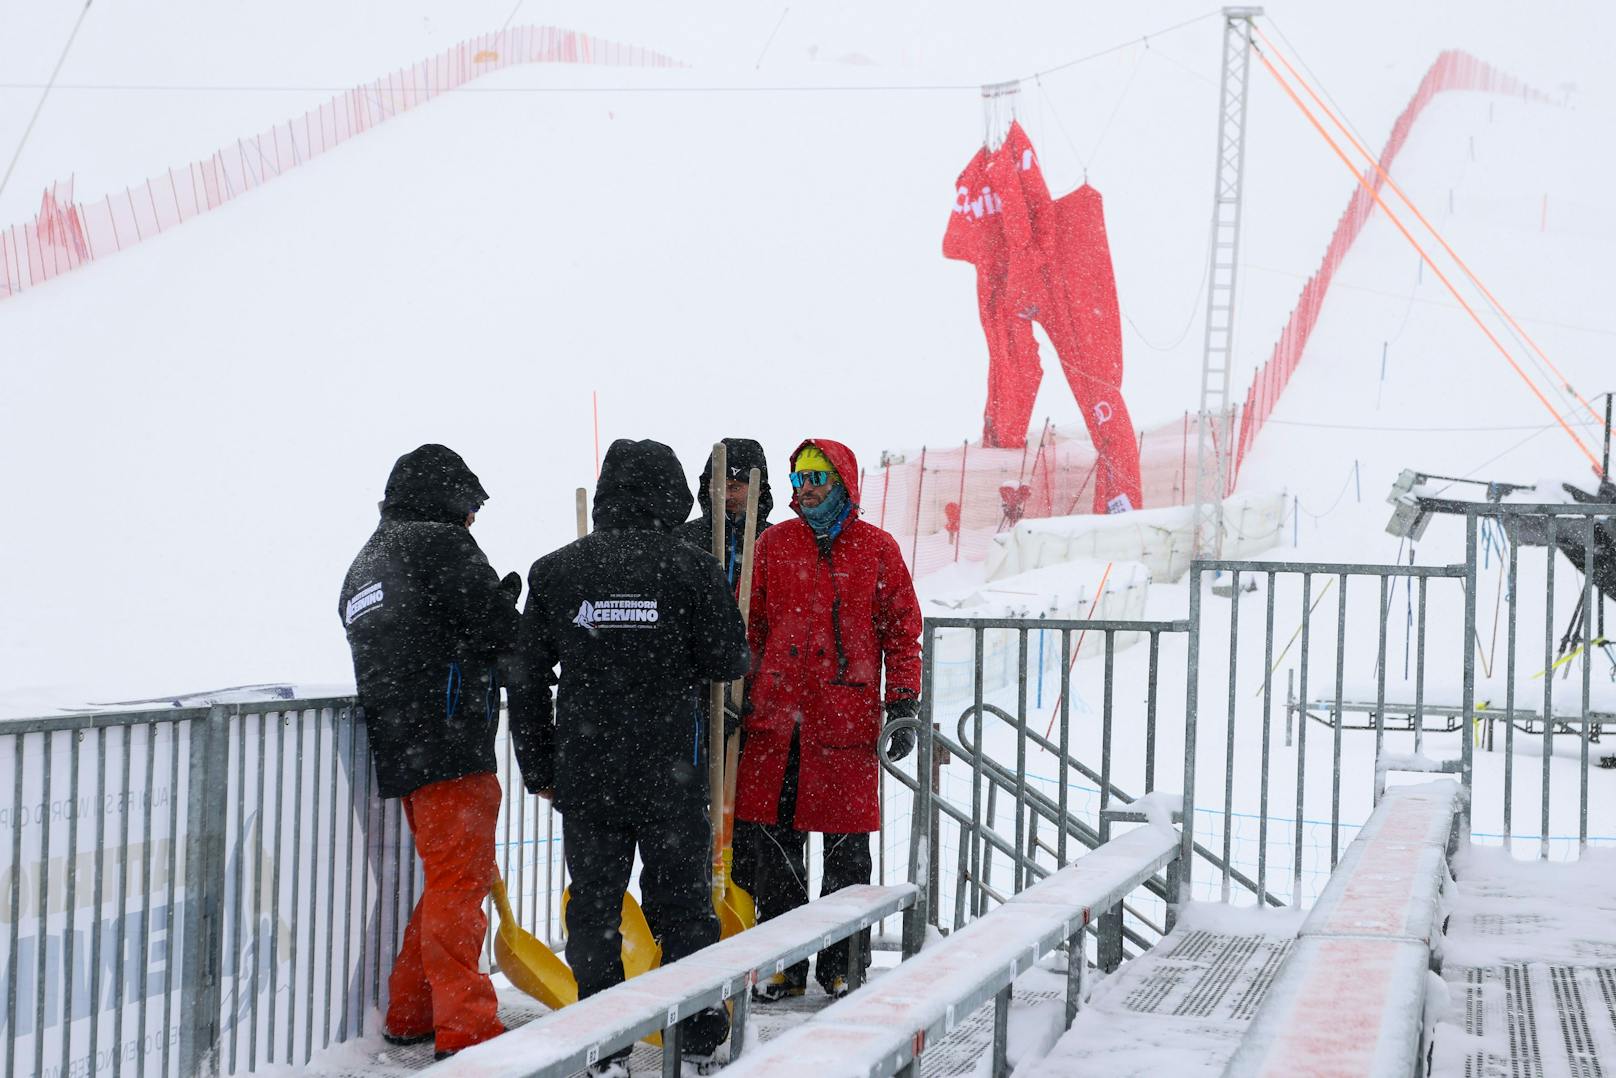 Die Weltcup-Premiere in Zermatt fiel dem Wind und zu viel Schnee zum Opfer. Beide geplanten Abfahrten sorgten für die Absagen Nummer zwei und drei.